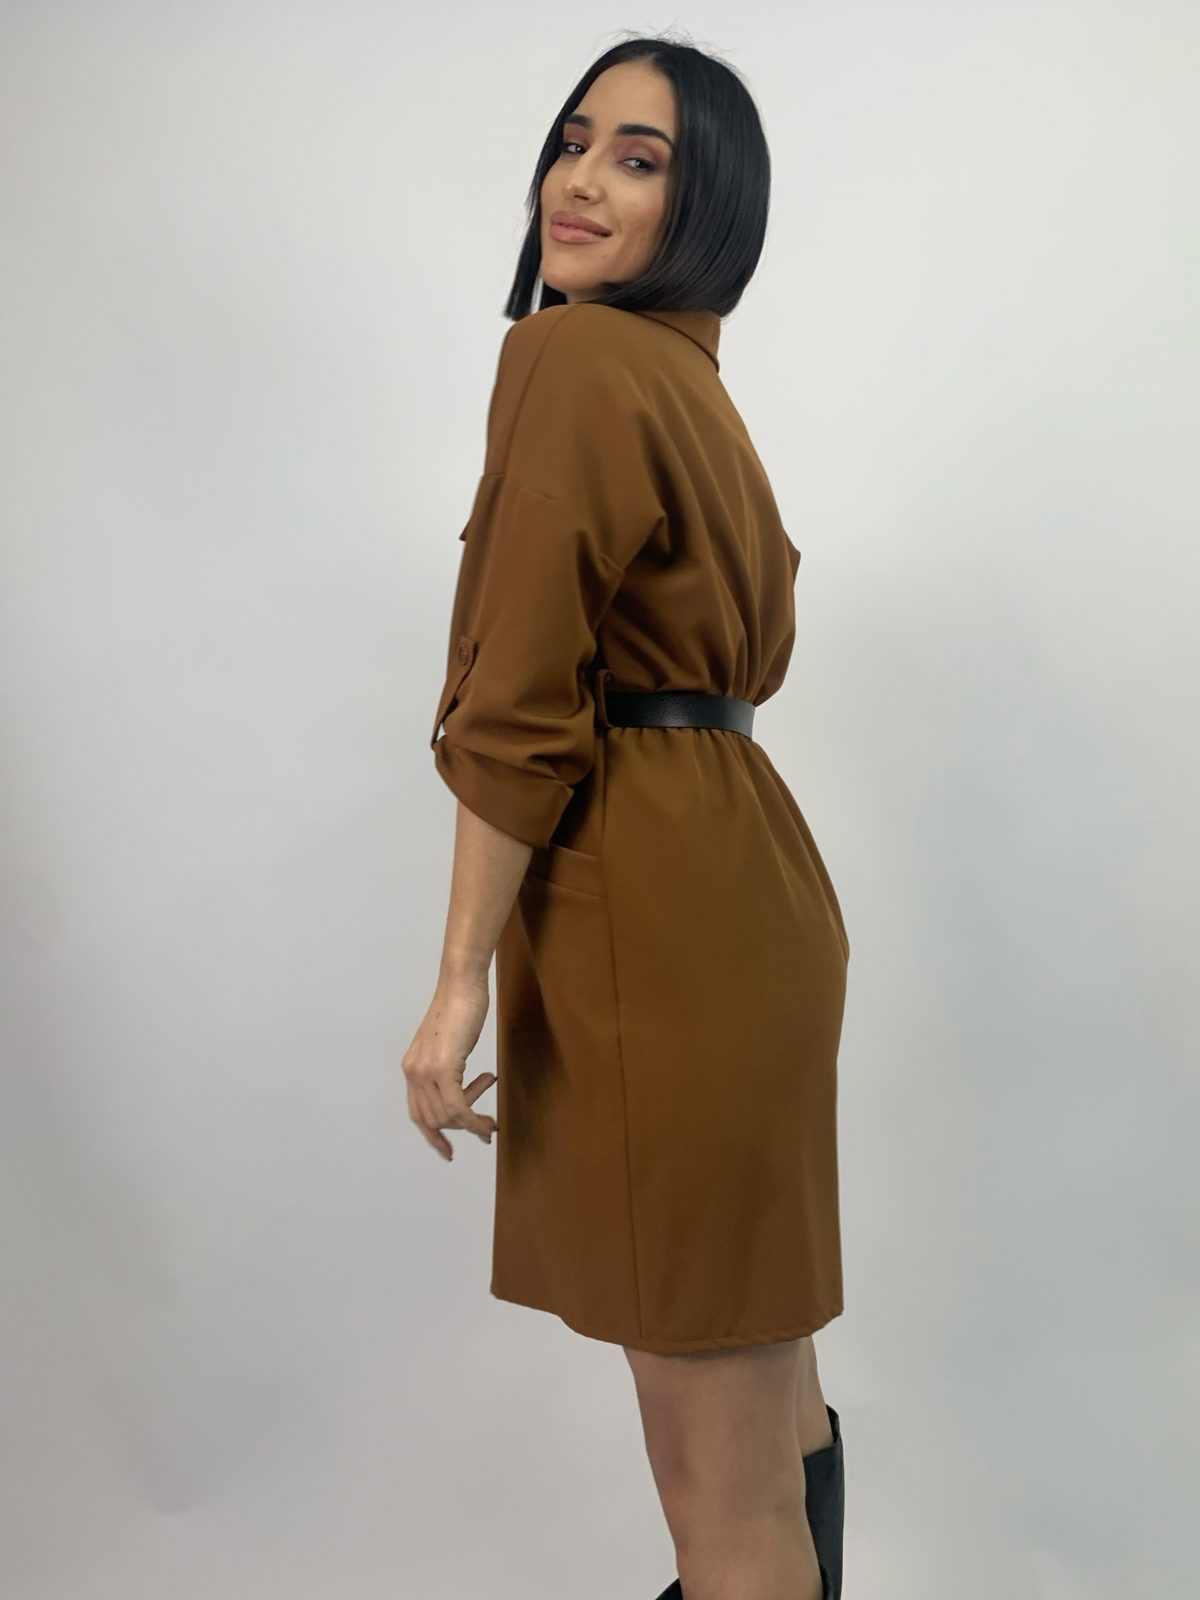 Short brown dress